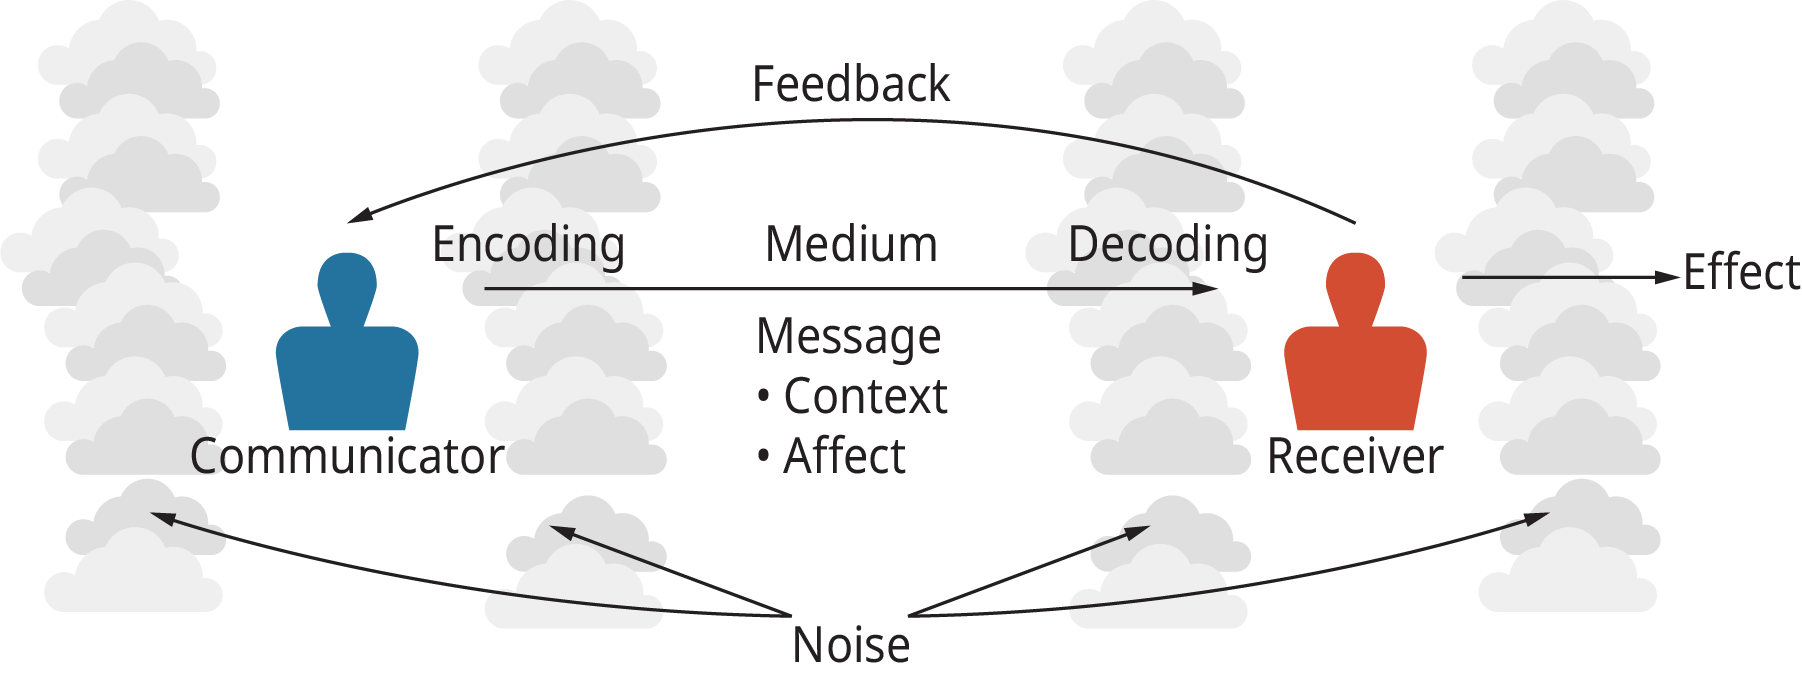 Una ilustración muestra el proceso de difusión de la información a través del modelo básico de comunicación.